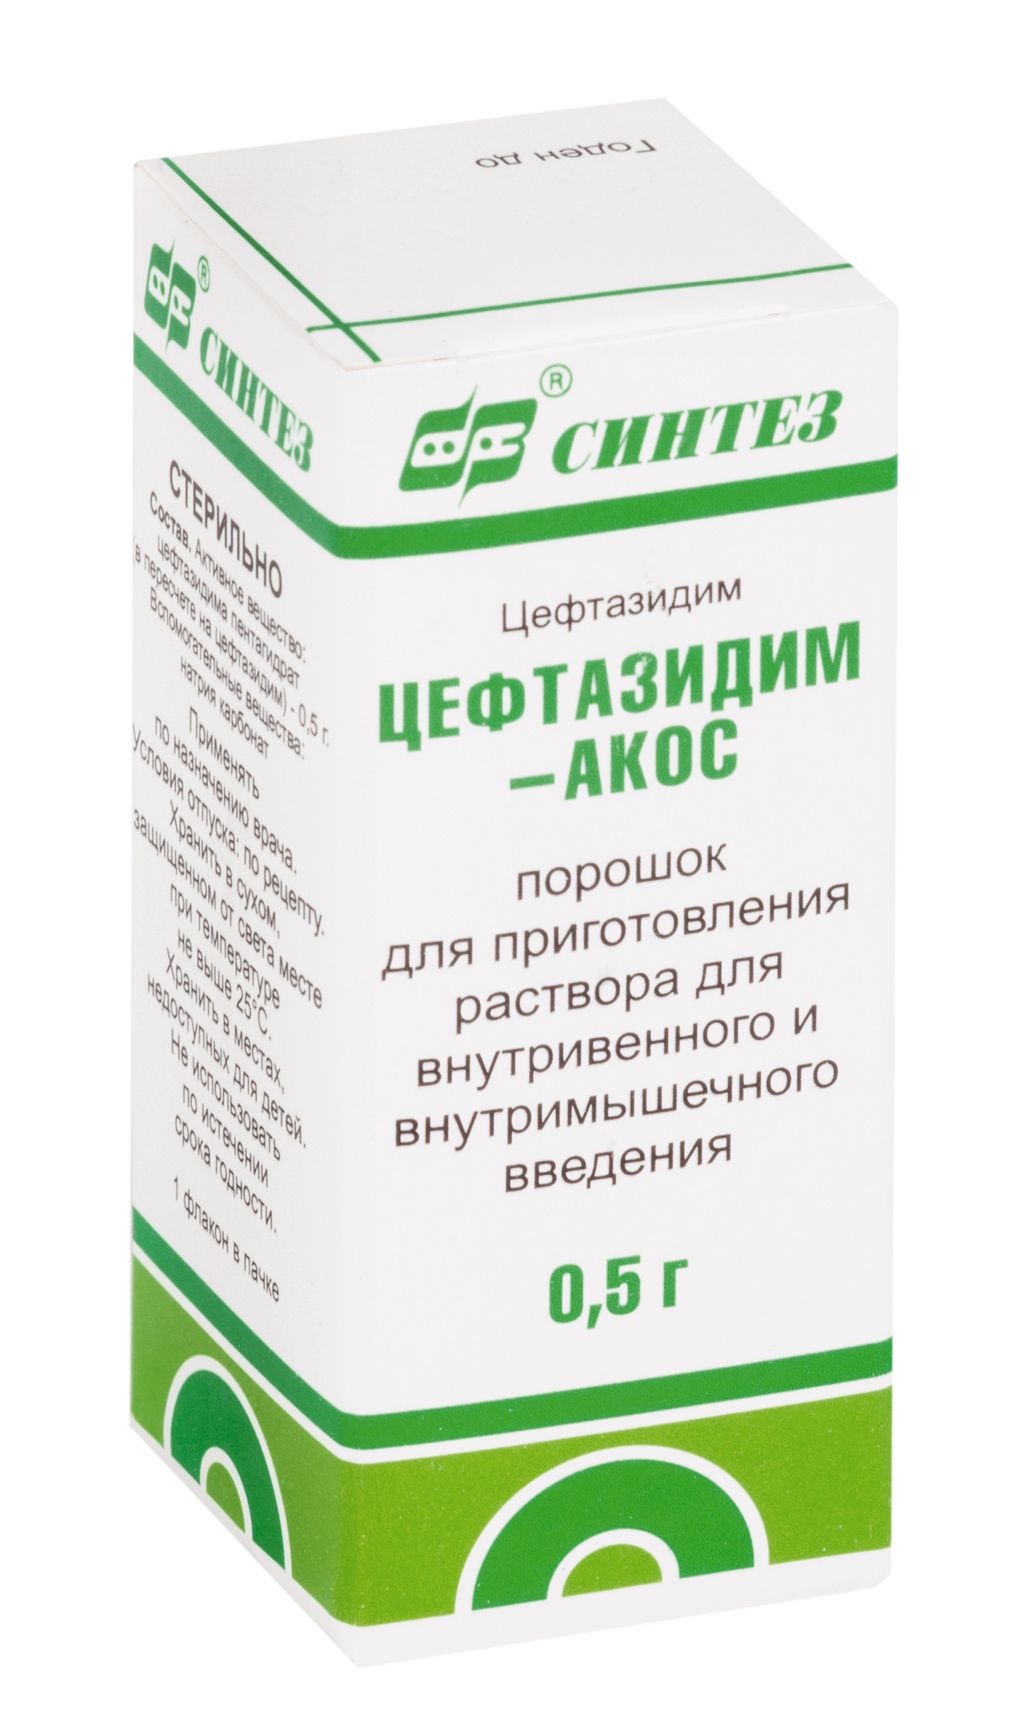 фото упаковки Цефтазидим-АКОС